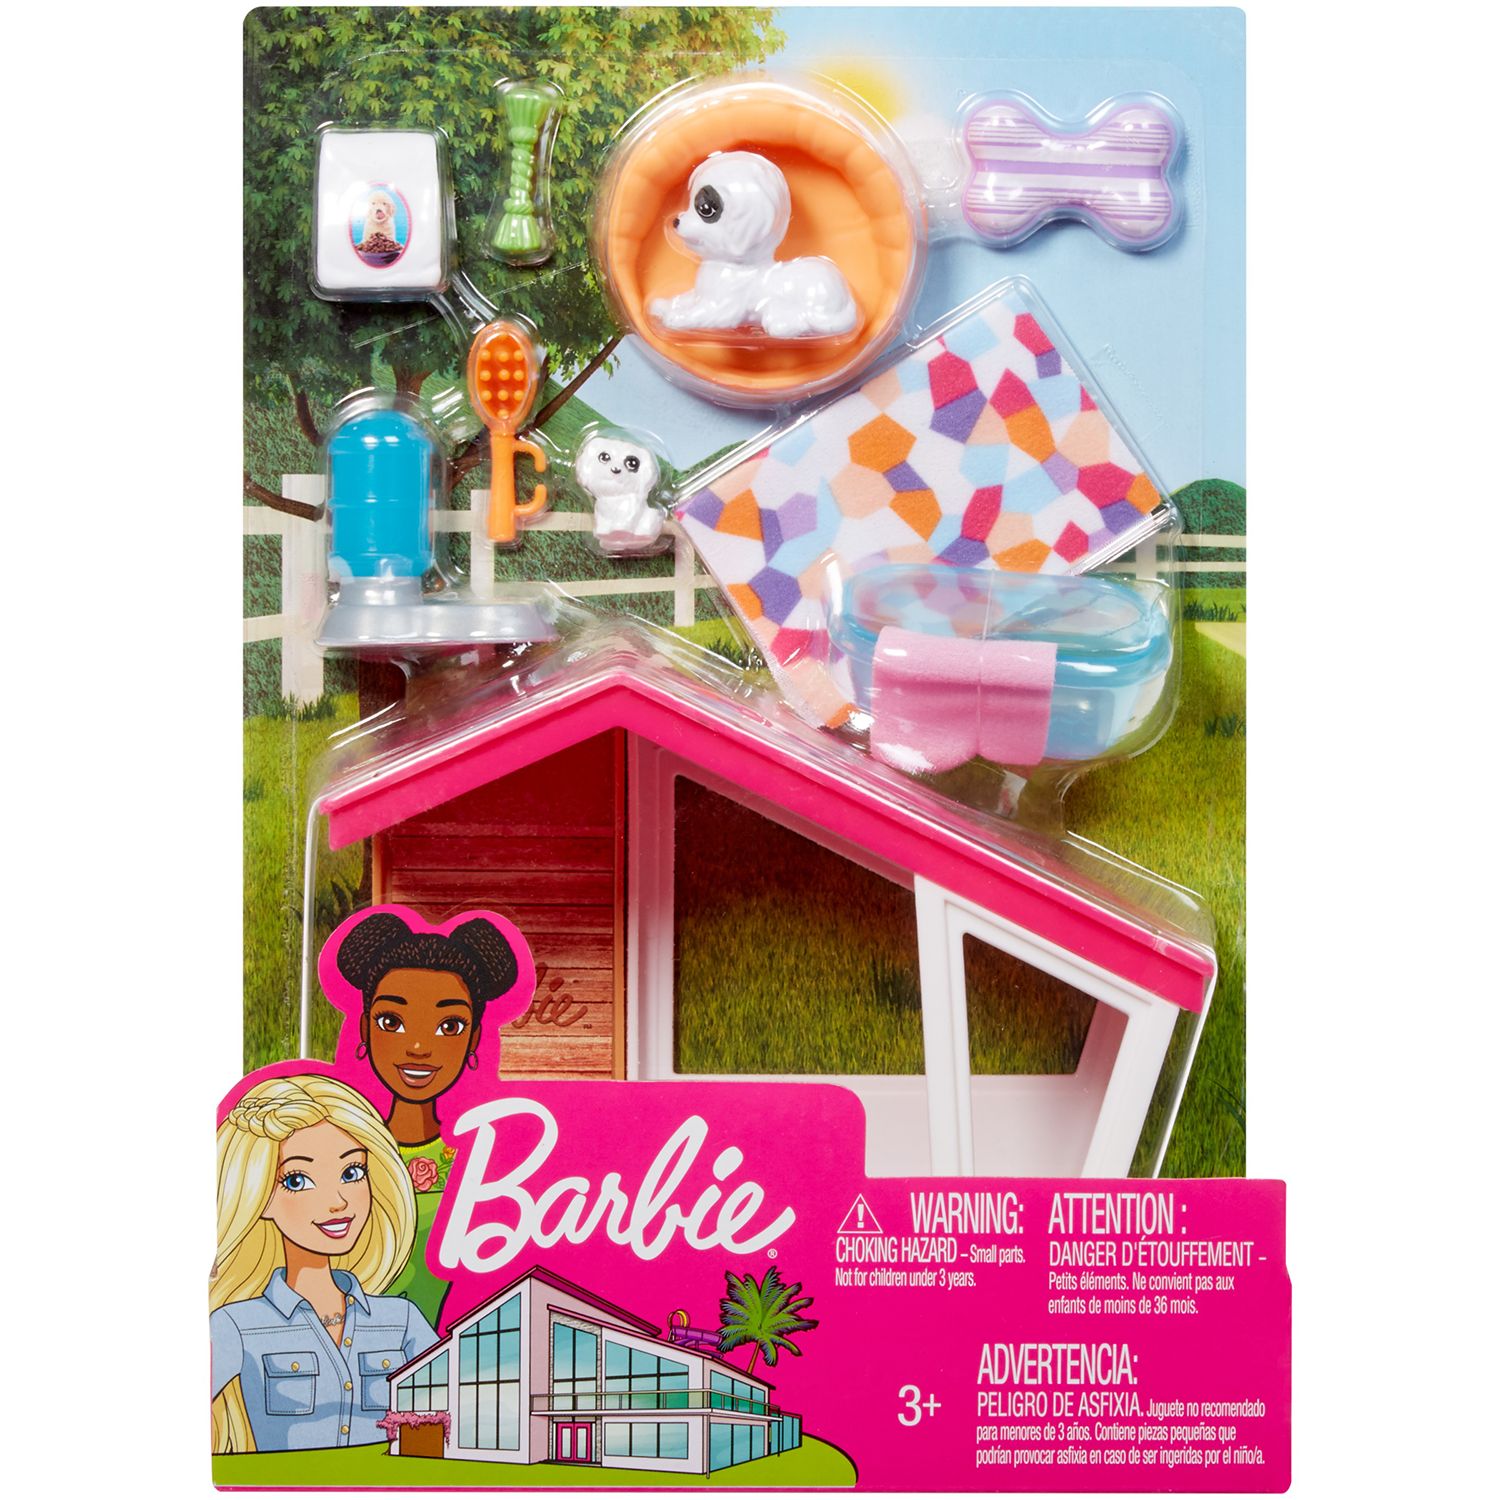 barbie dolls under $10